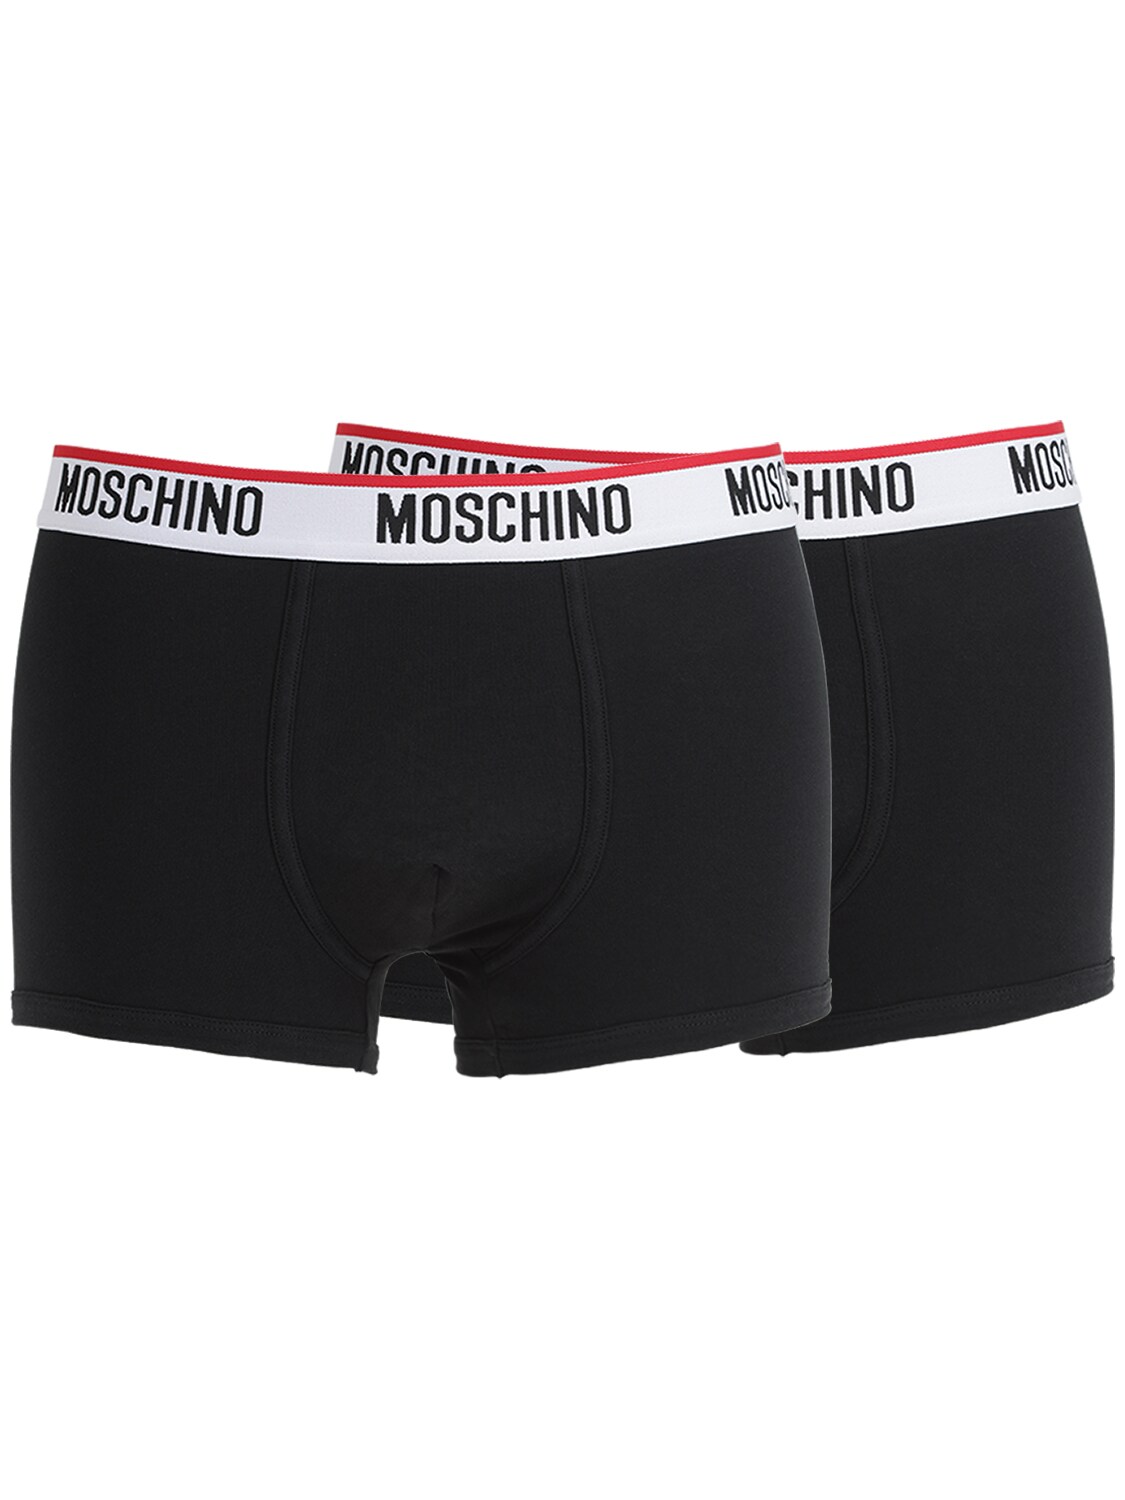 Moschino Underwear 棉质平纹针织平角内裤2条装 In Black